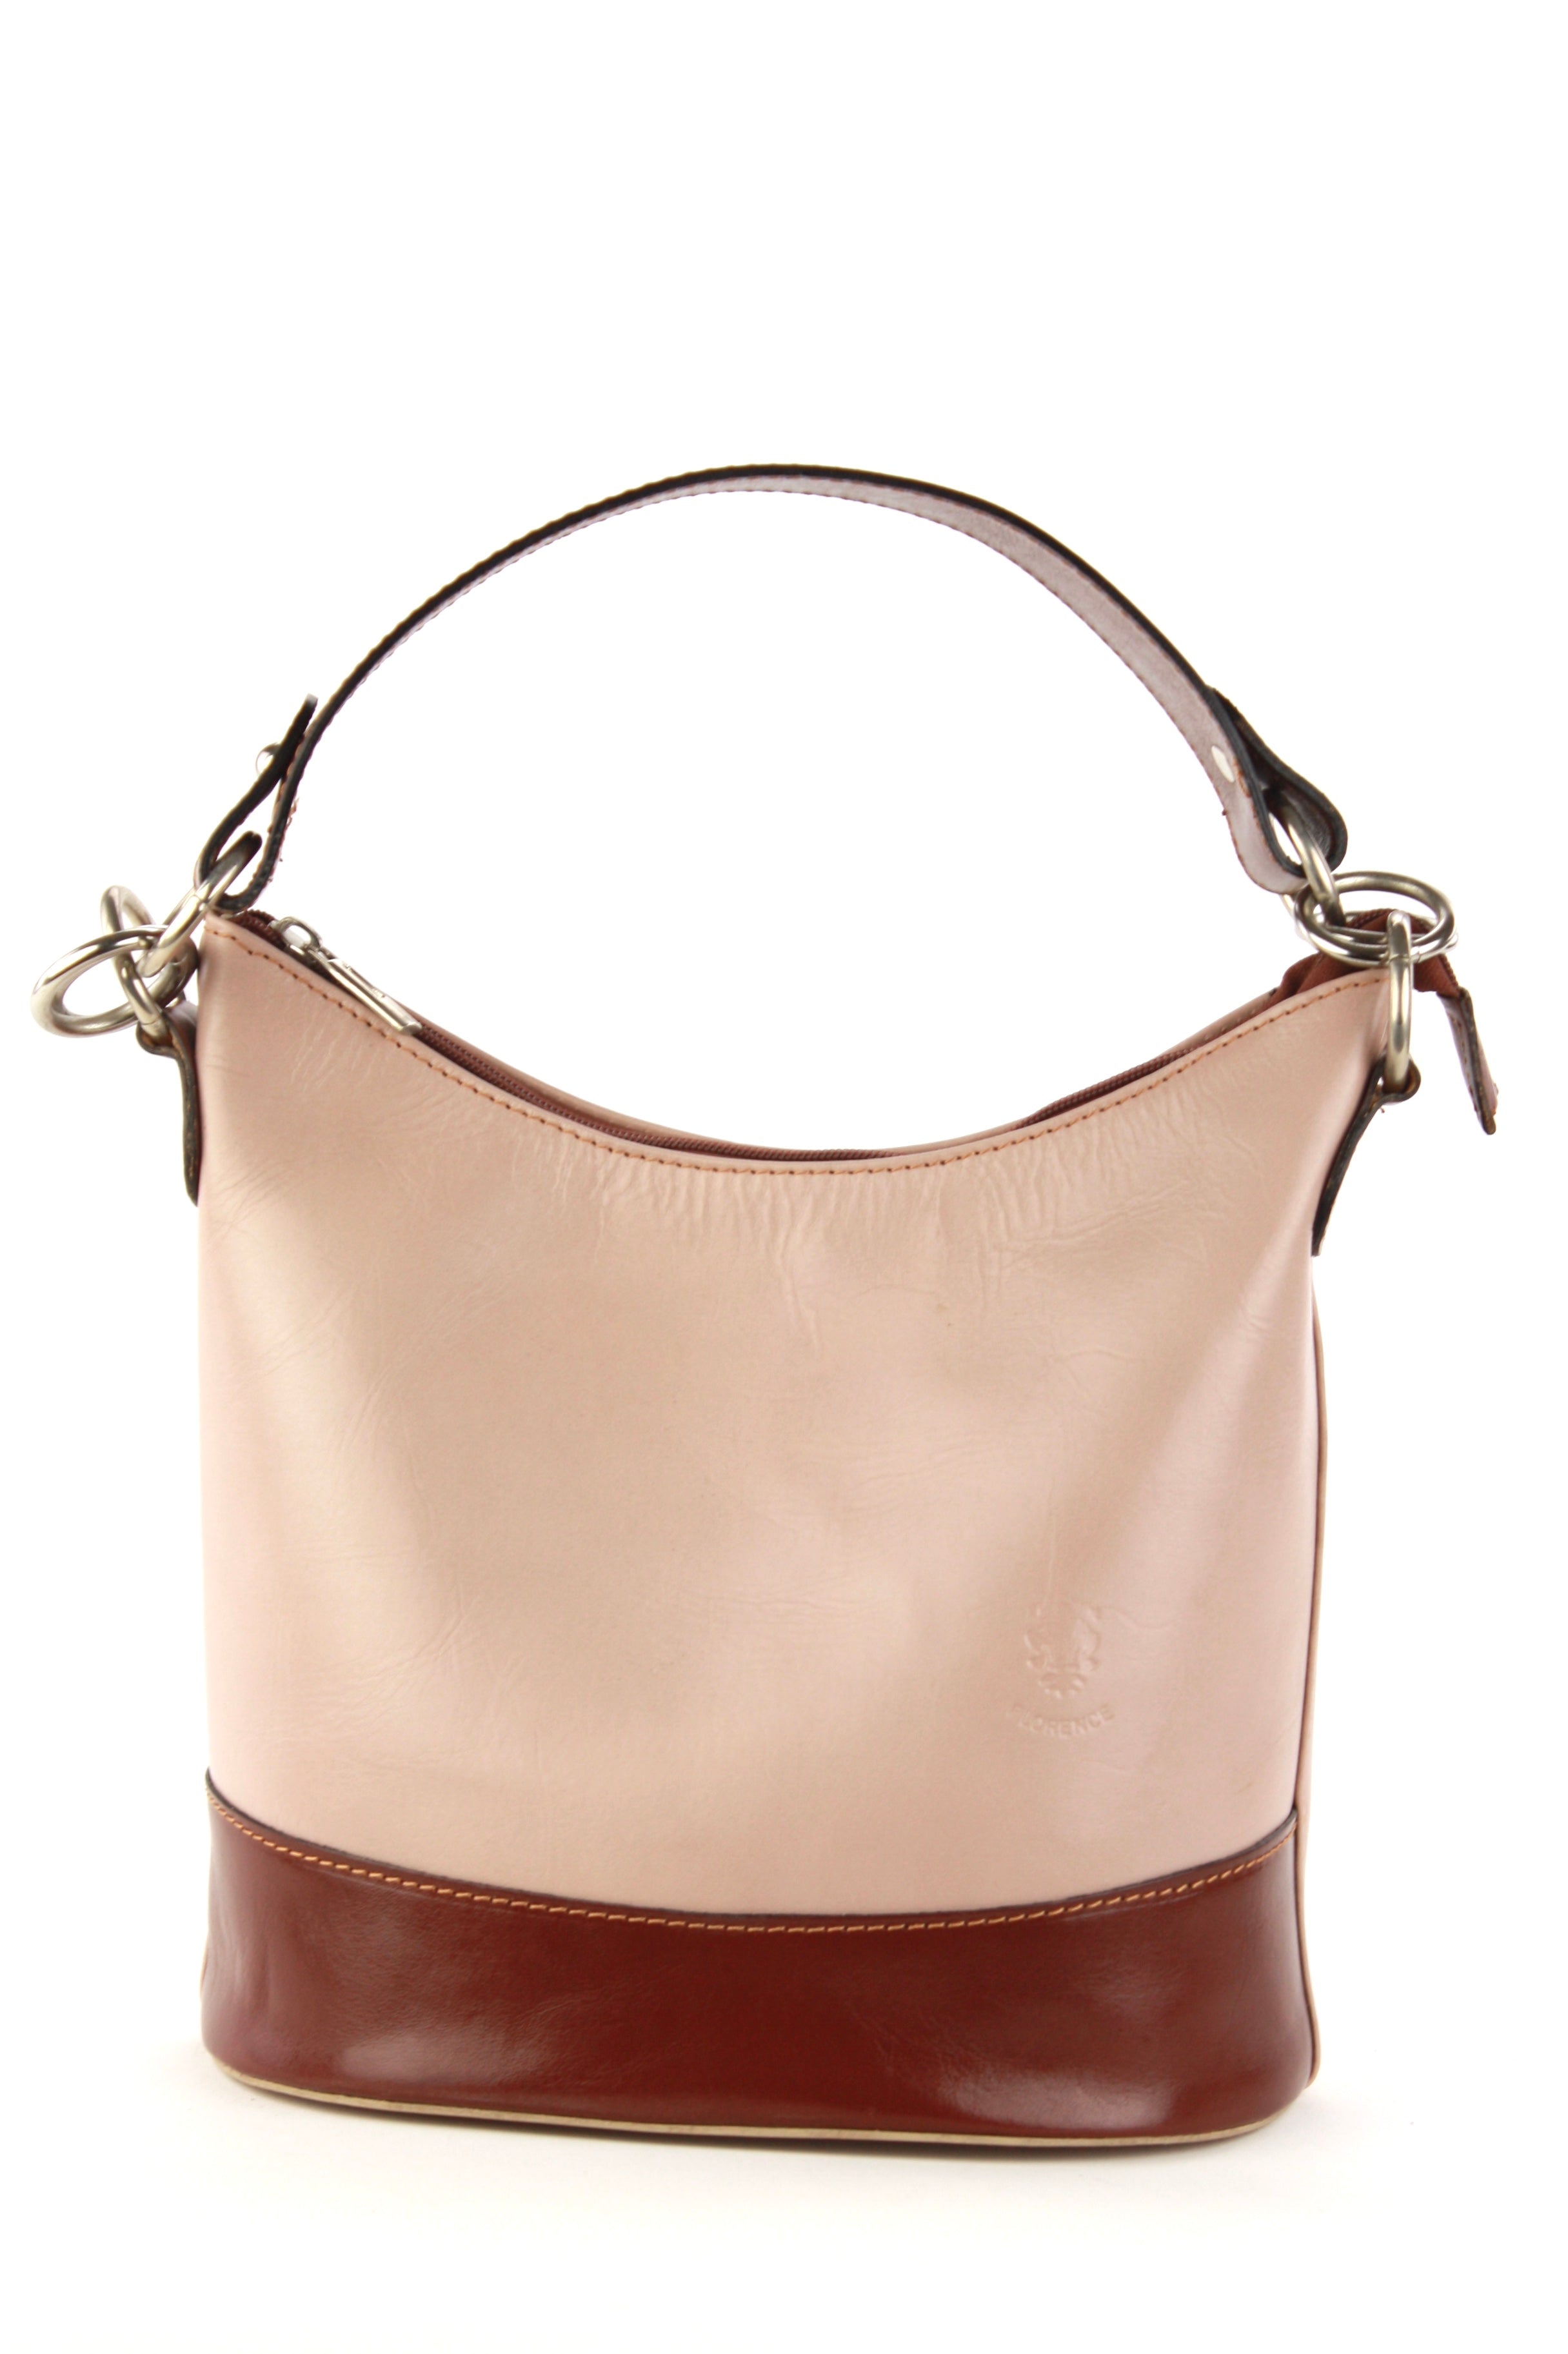 Leather Handbags, Simona Luxury Handbag